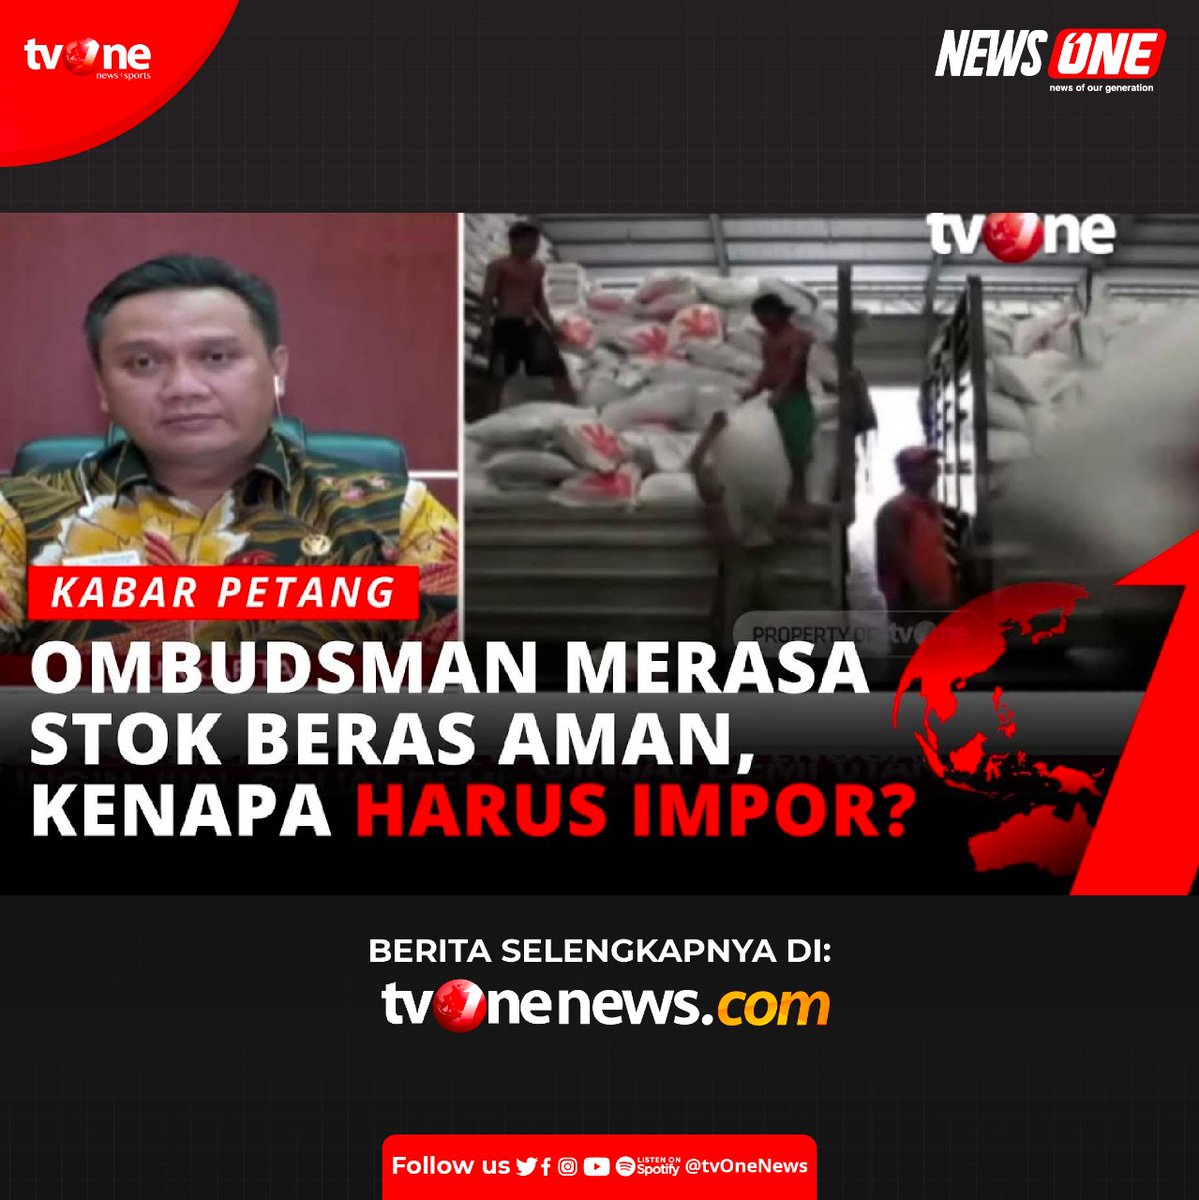 Anggota Ombudsman Indonesia menyatakan bahwa dalam waktu dekat ini akan ada panen raya yang jika dikalkulasikan persediaan beras akan aman sampai tengah bulan Juni atau Juli tahun ini.
Selengkapnya bit.ly/kontroversiimp…
#NewsOne #CariBeritaditvOne #BerasImpor #LuarNegeri